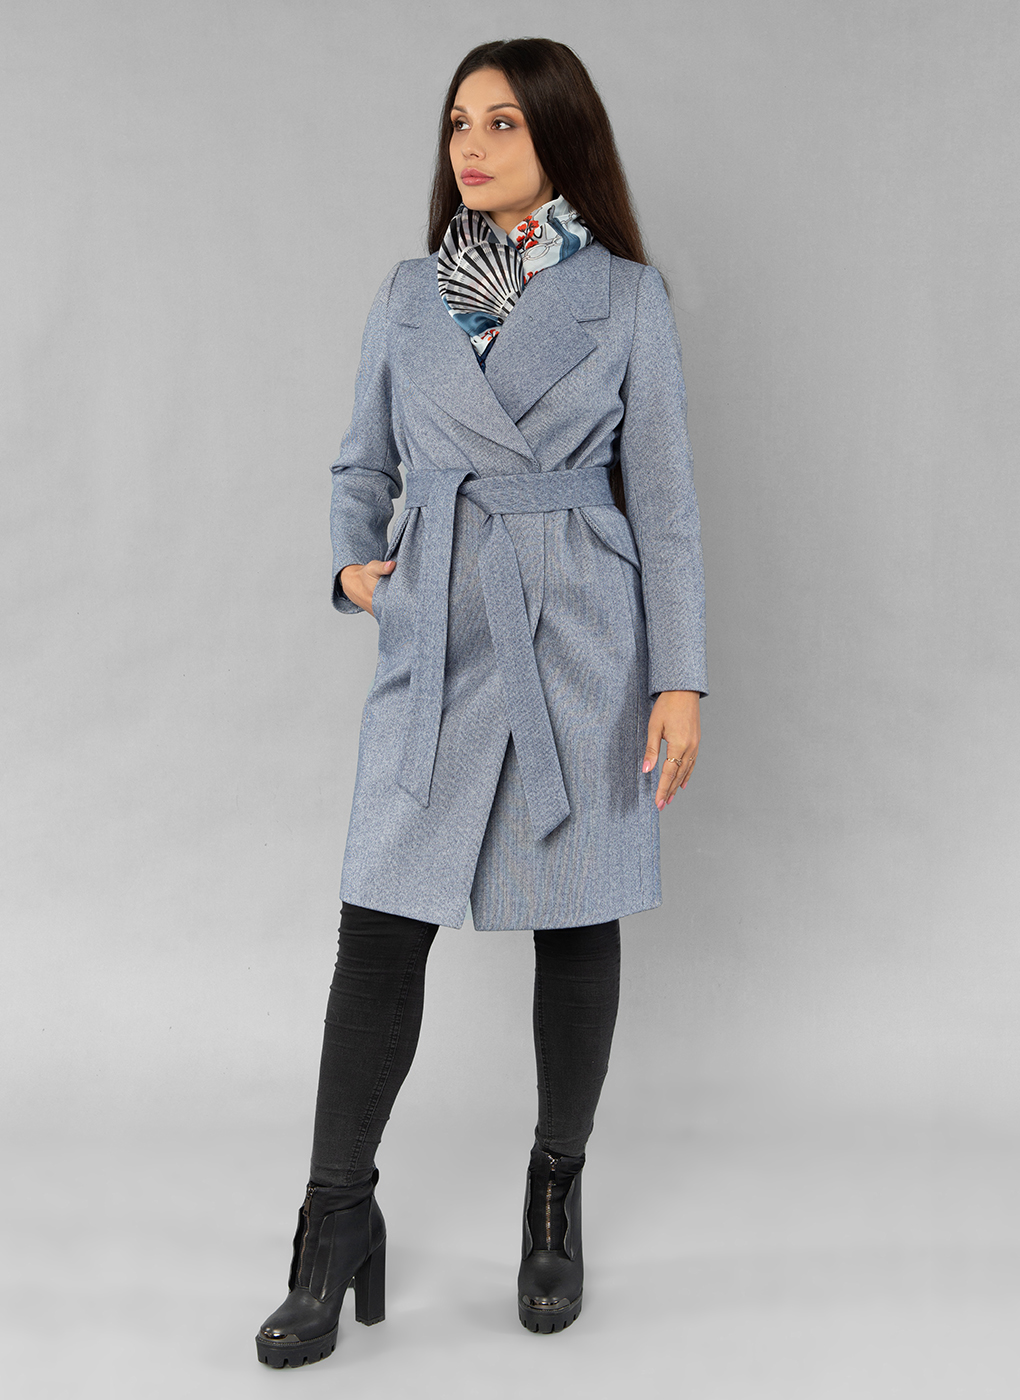 Пальто женское Sezalto 55023 синее 44 RU